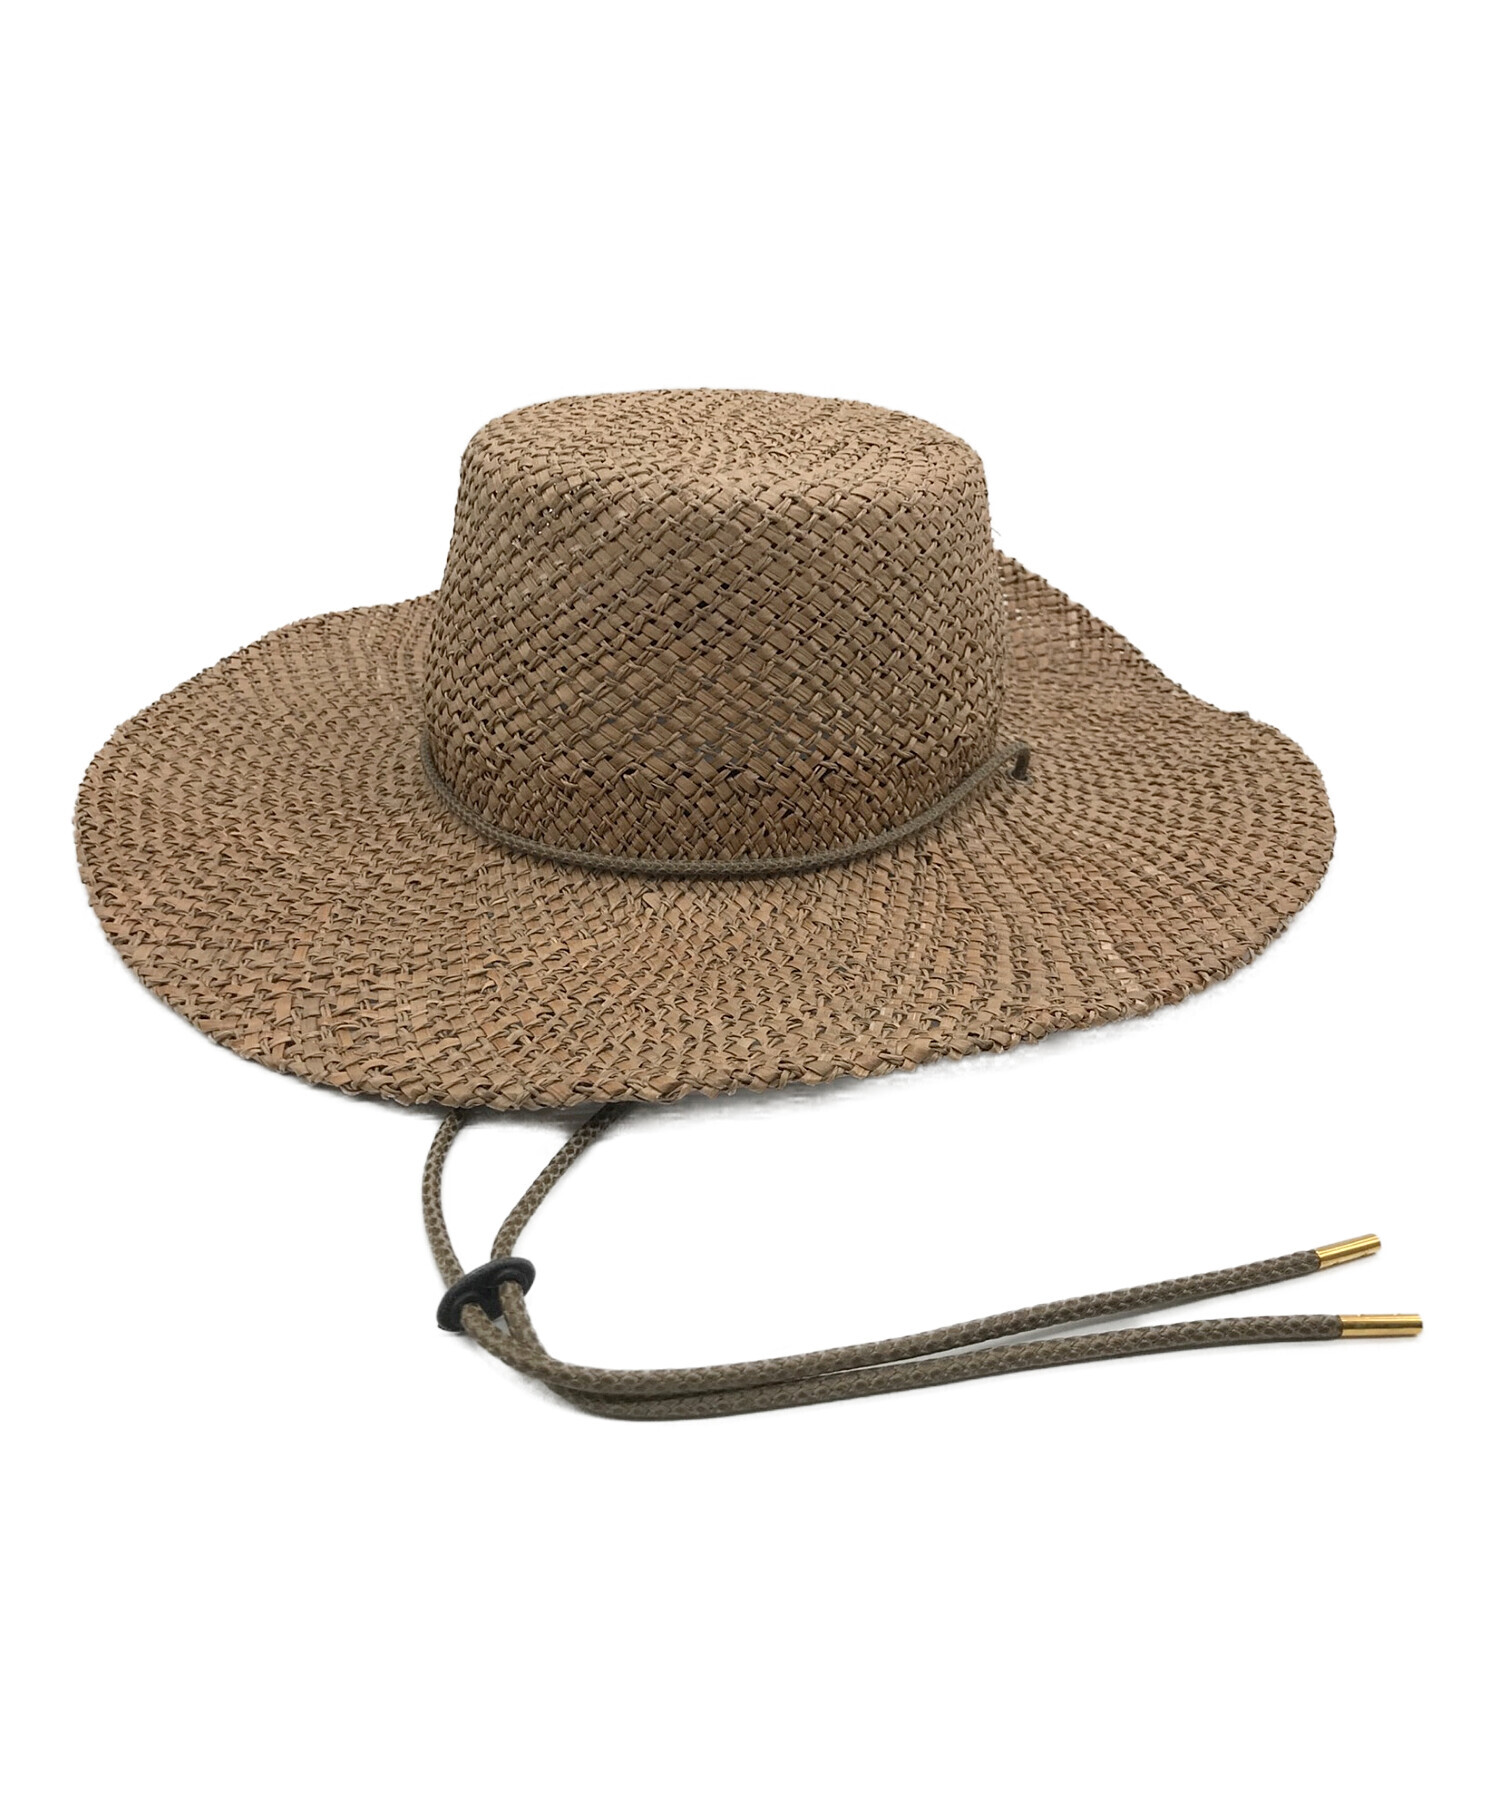 マリホジャ ヴィンテージハット 超安い品質 - 帽子